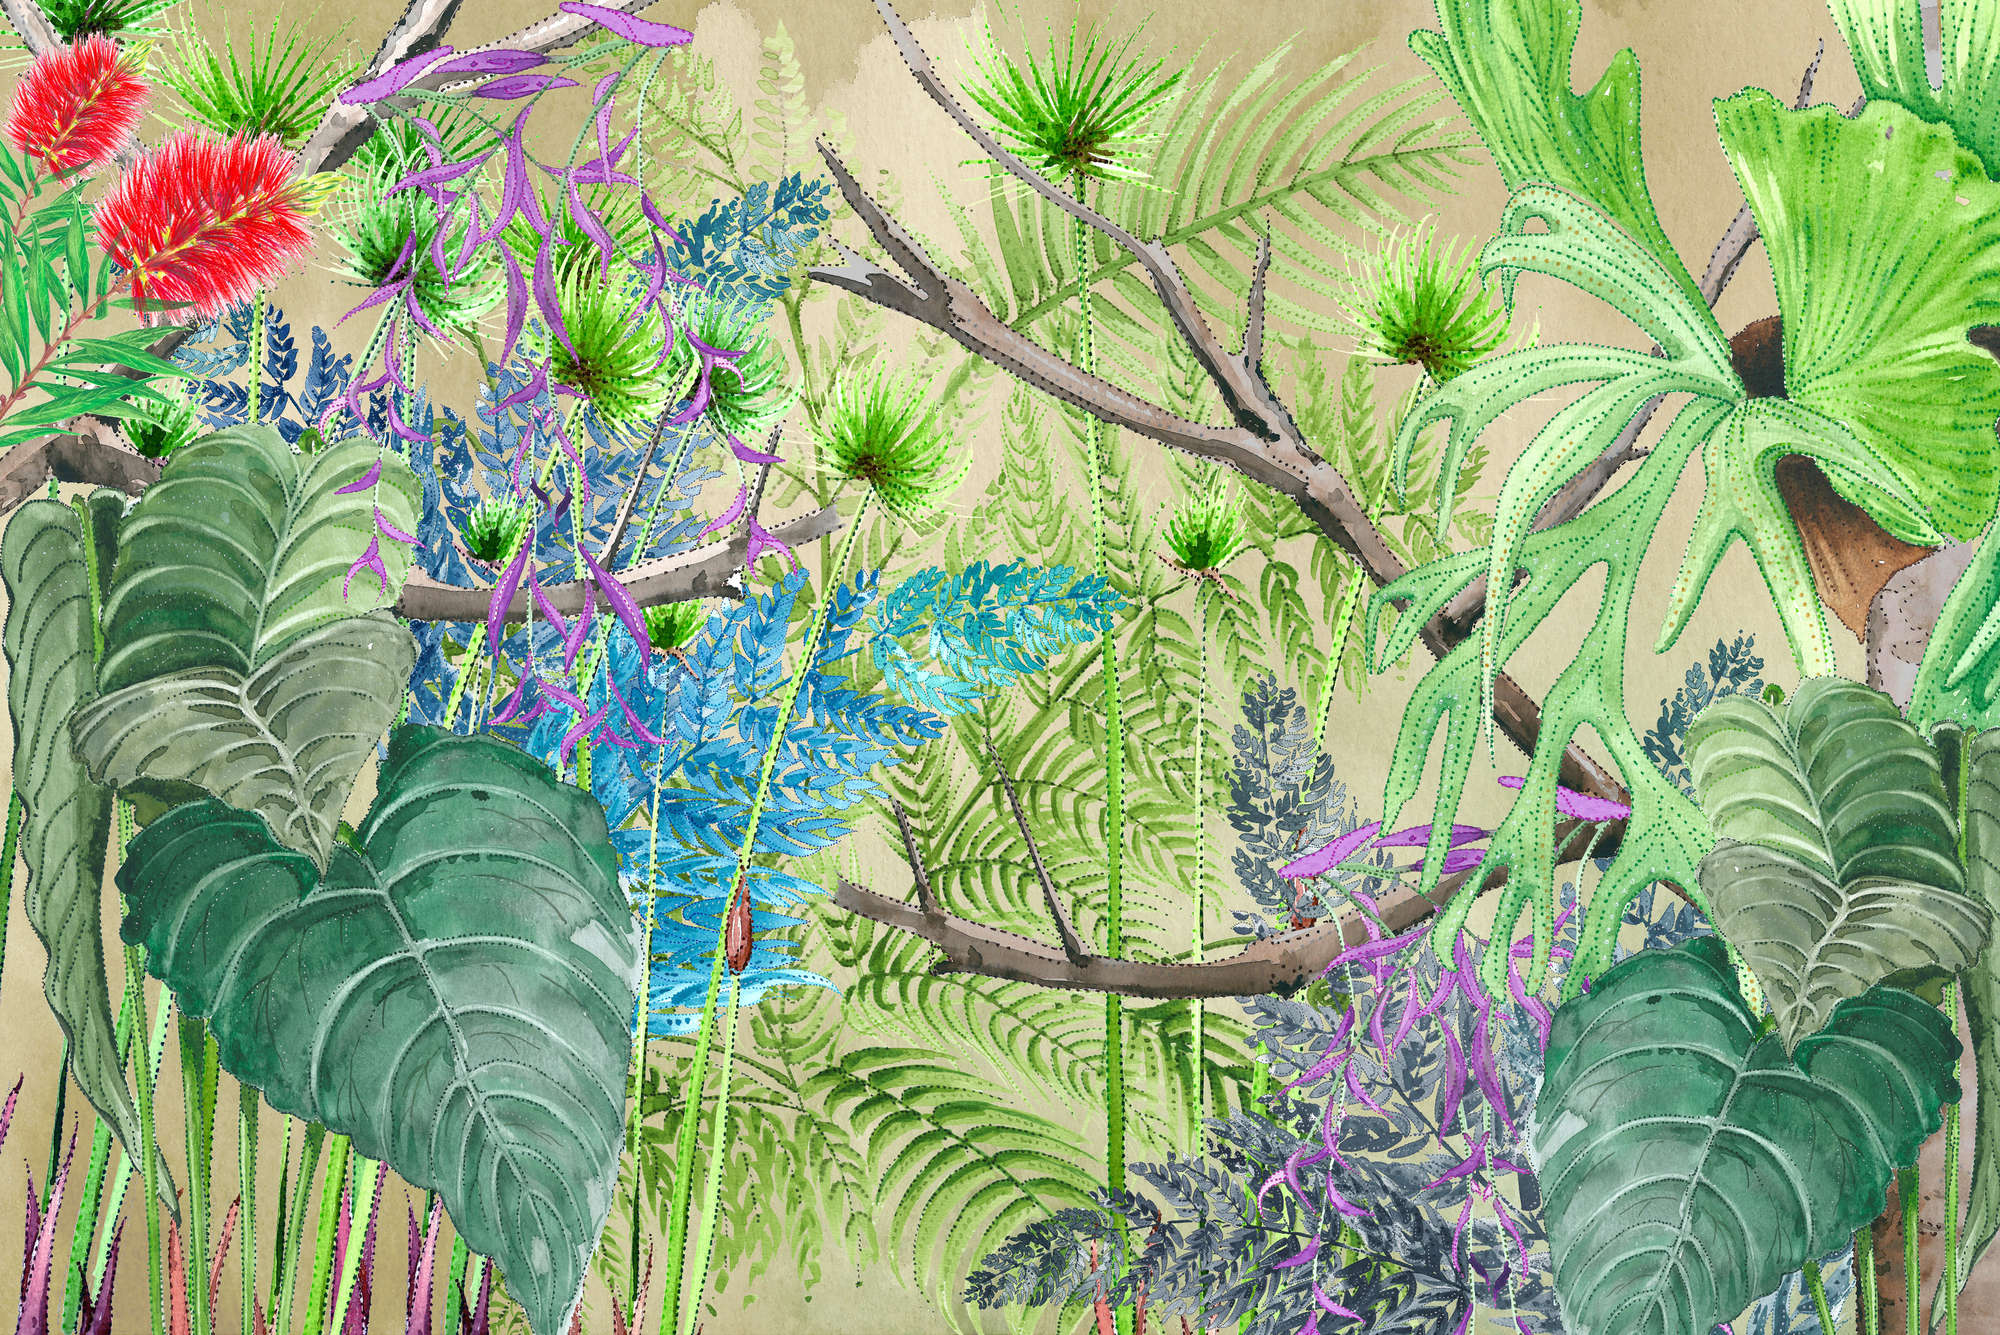             Papier peint panoramique jungle avec des fleurs en bleu et vert sur intissé lisse mat
        